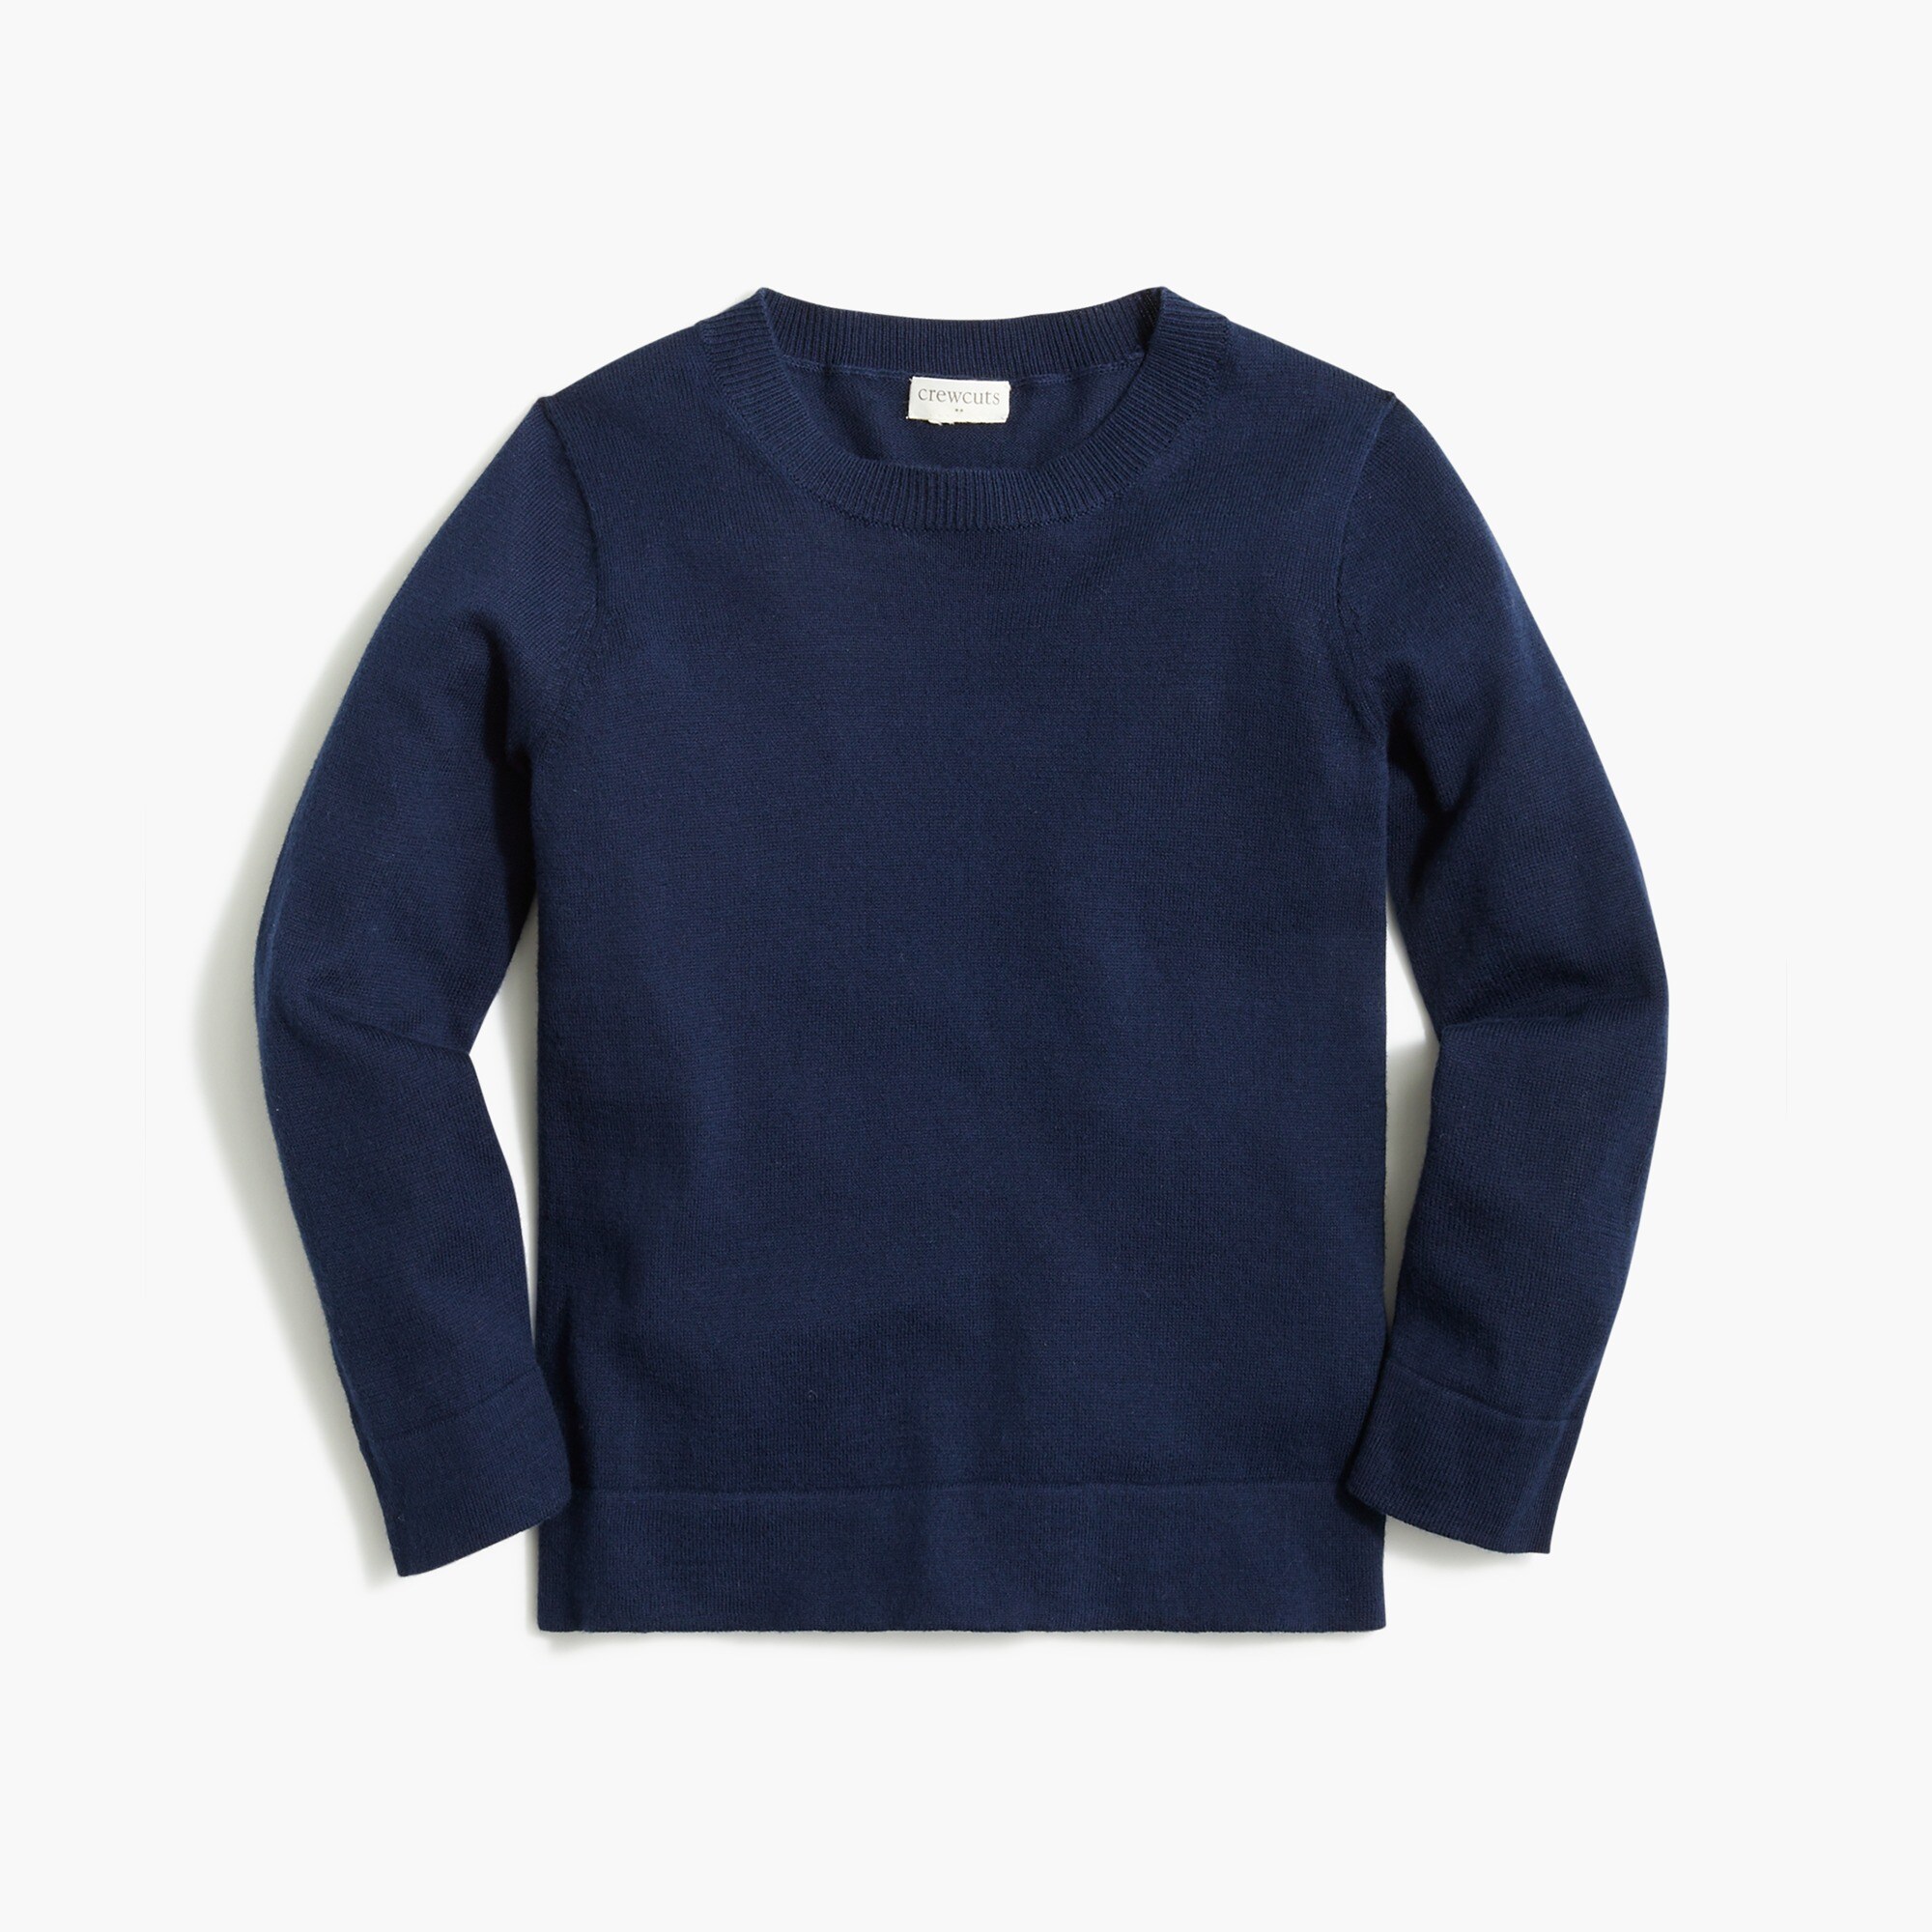  Girls' Teddie sweater